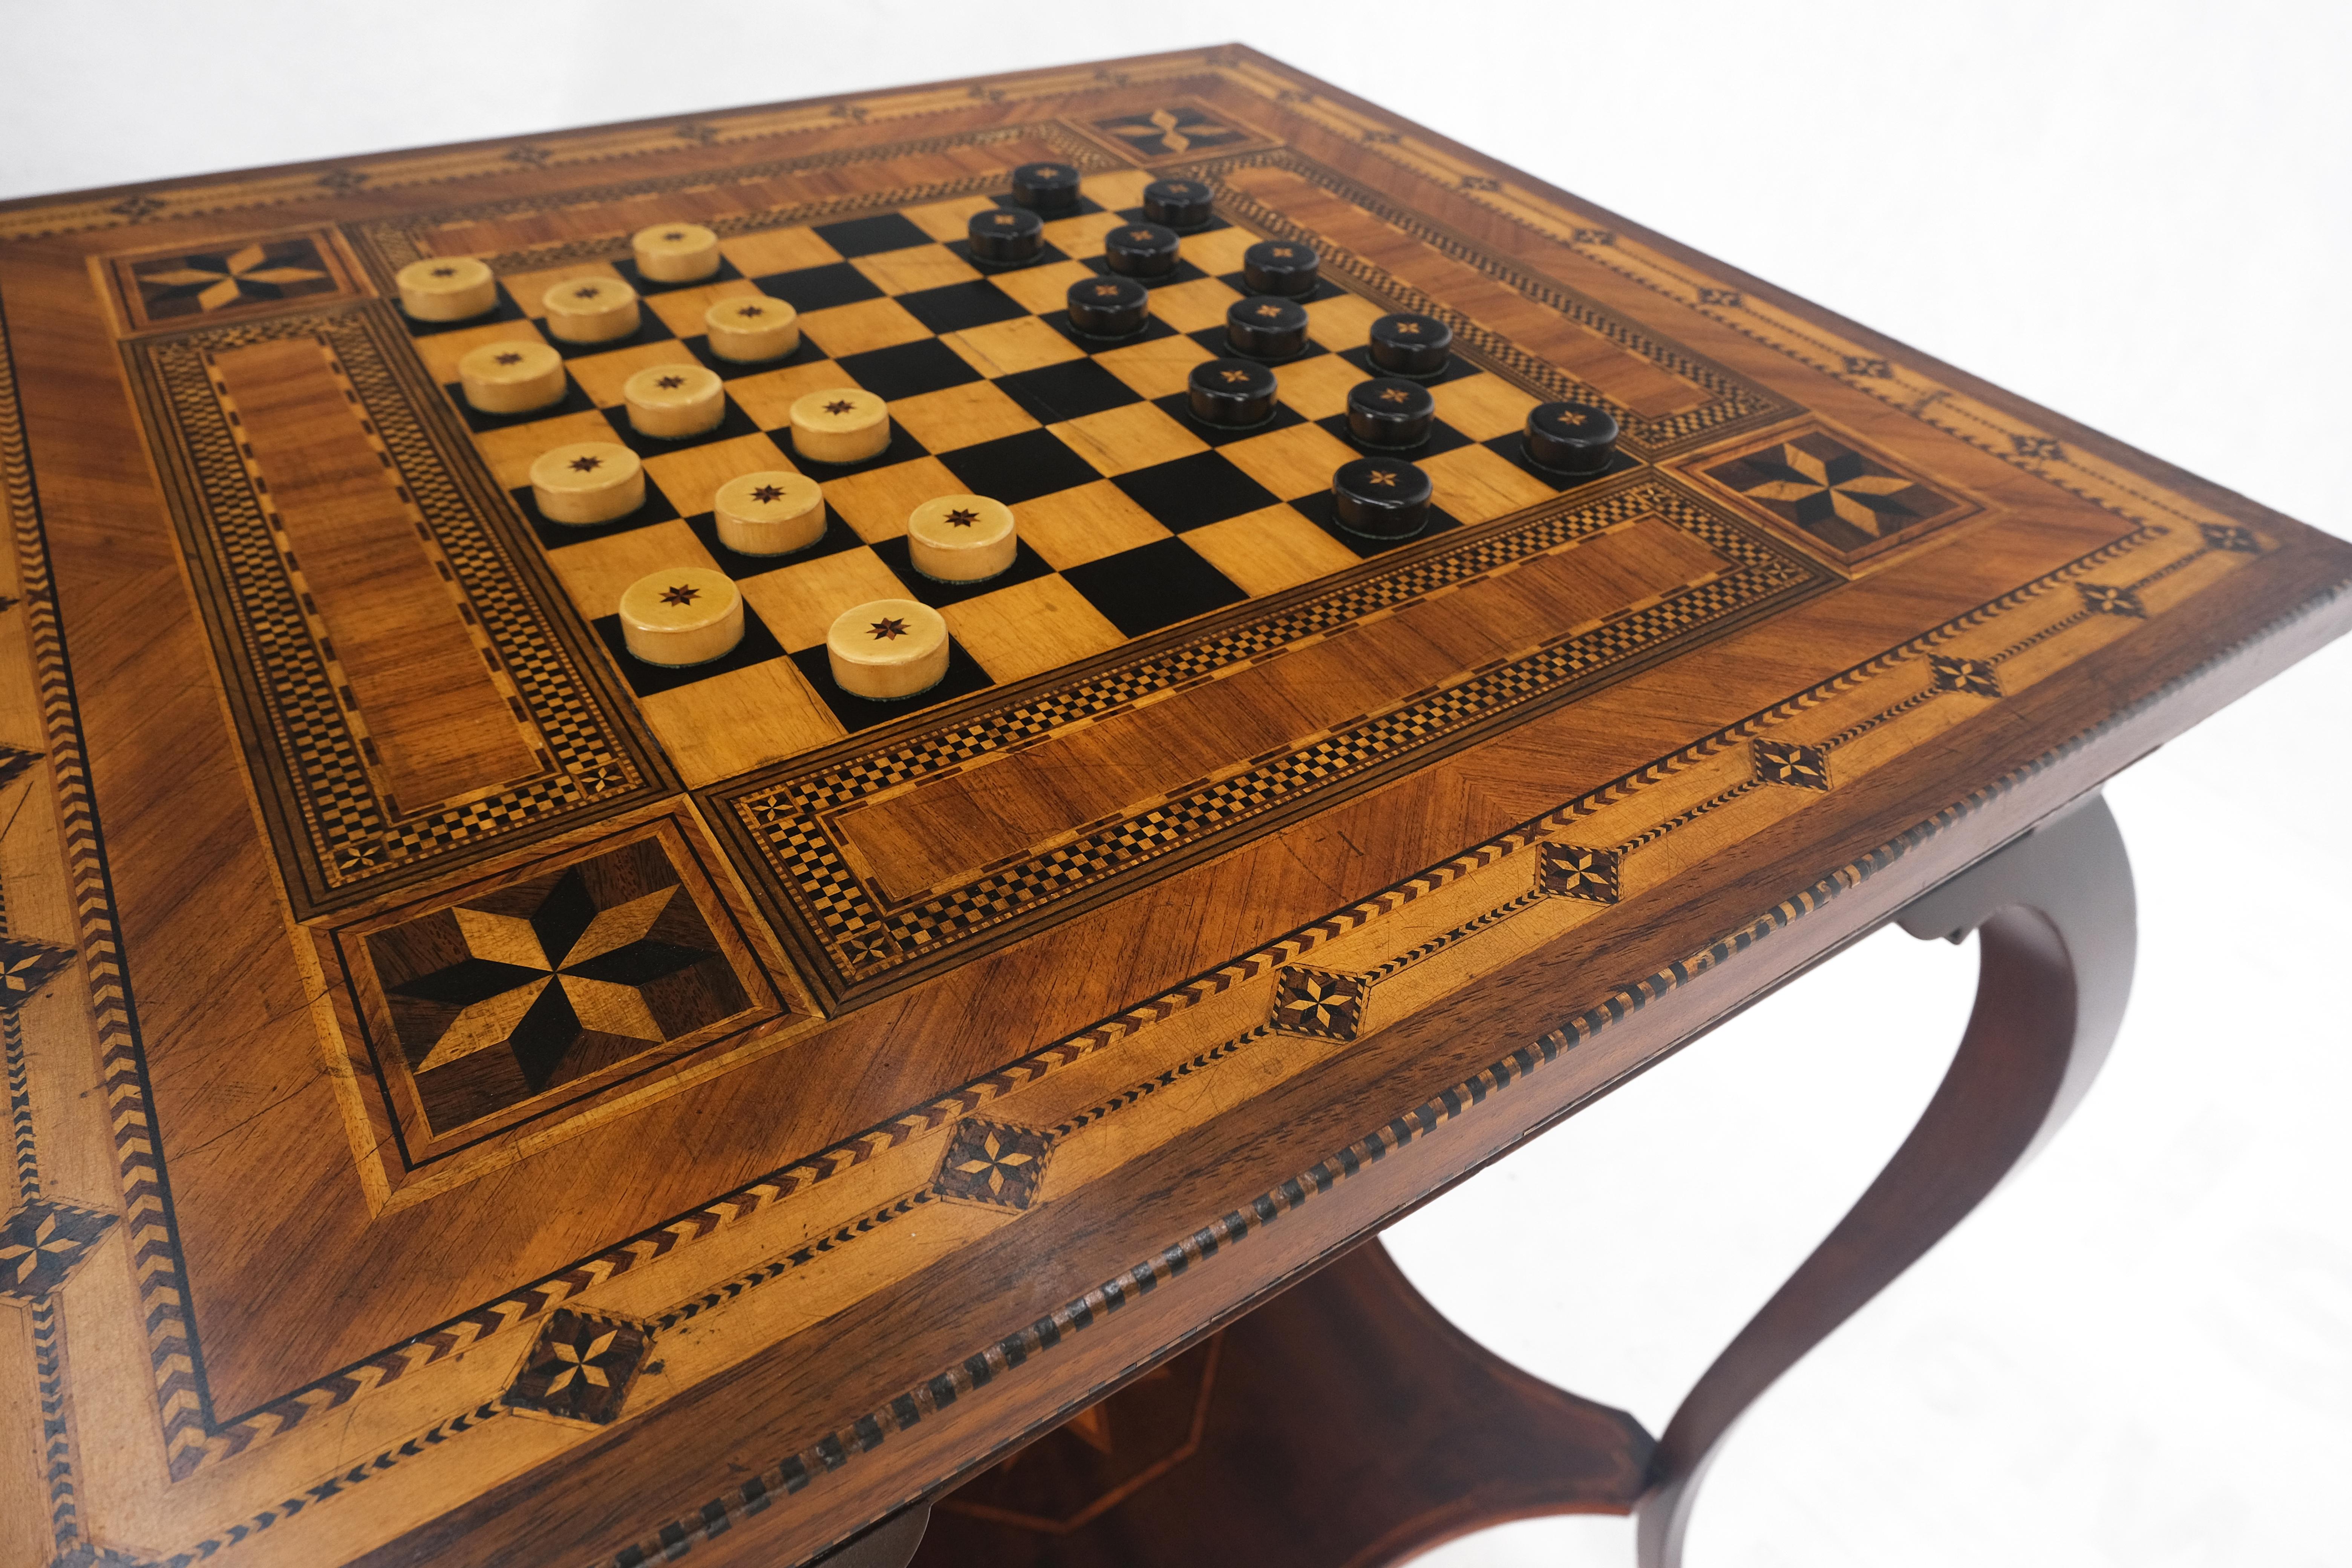 Sehr feine antike datiert !910 Inlay Schachbrett zwei Tier Spieltisch sehr sauber.
Dieser Tisch ist aus 12648 Holzstücken gefertigt.